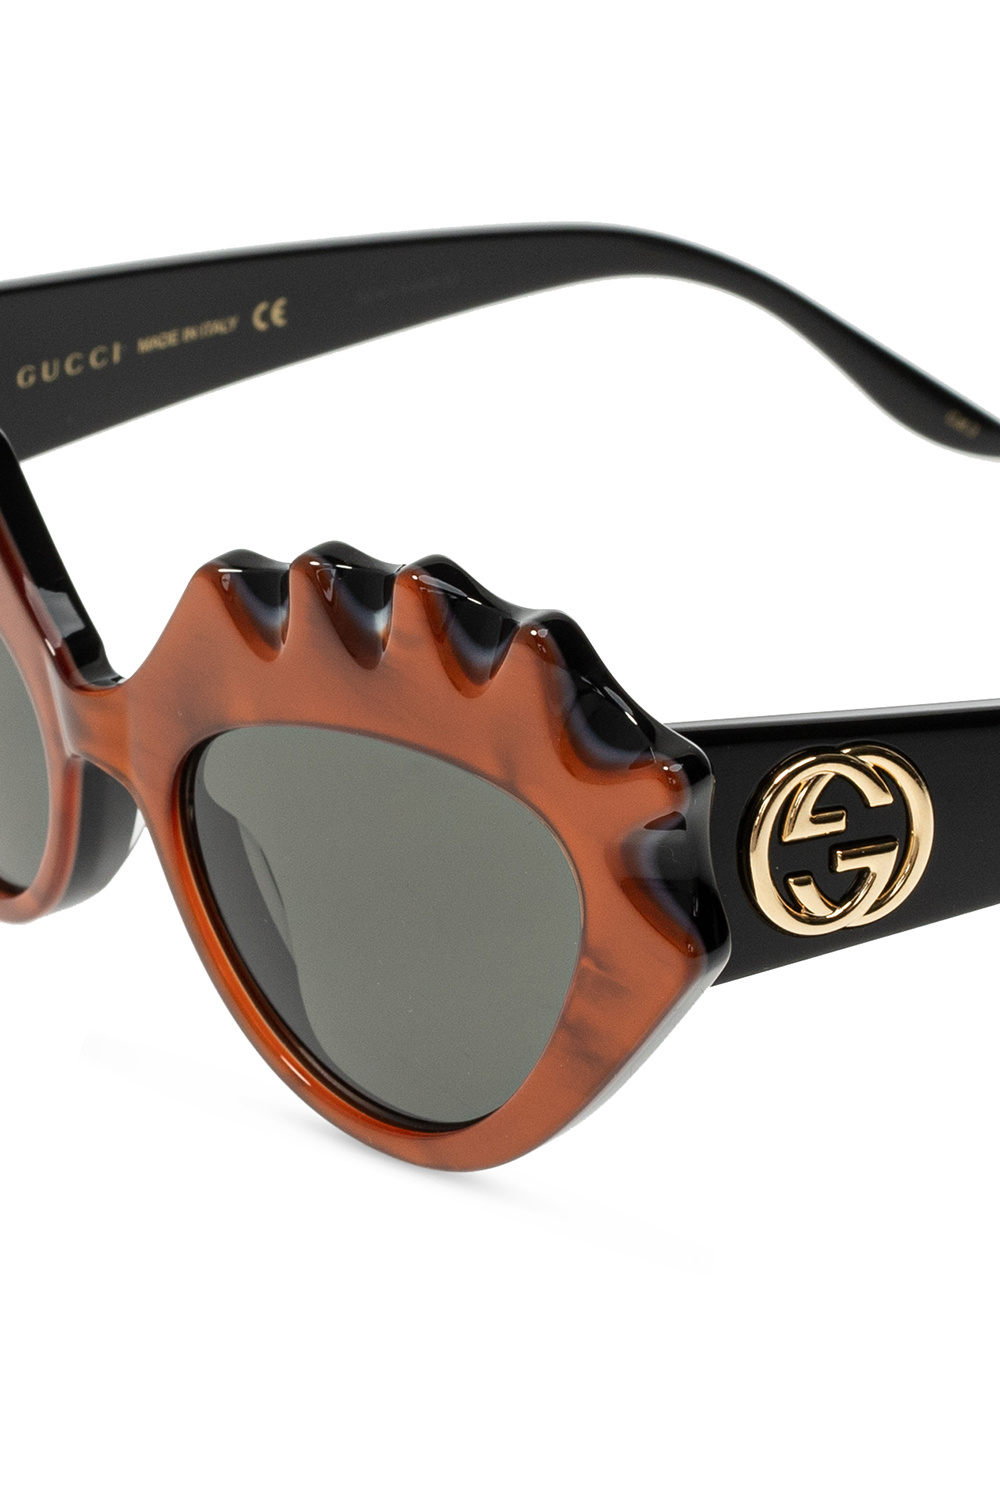 Gucci Black Tecuatl rectangular frame Persol sunglasses